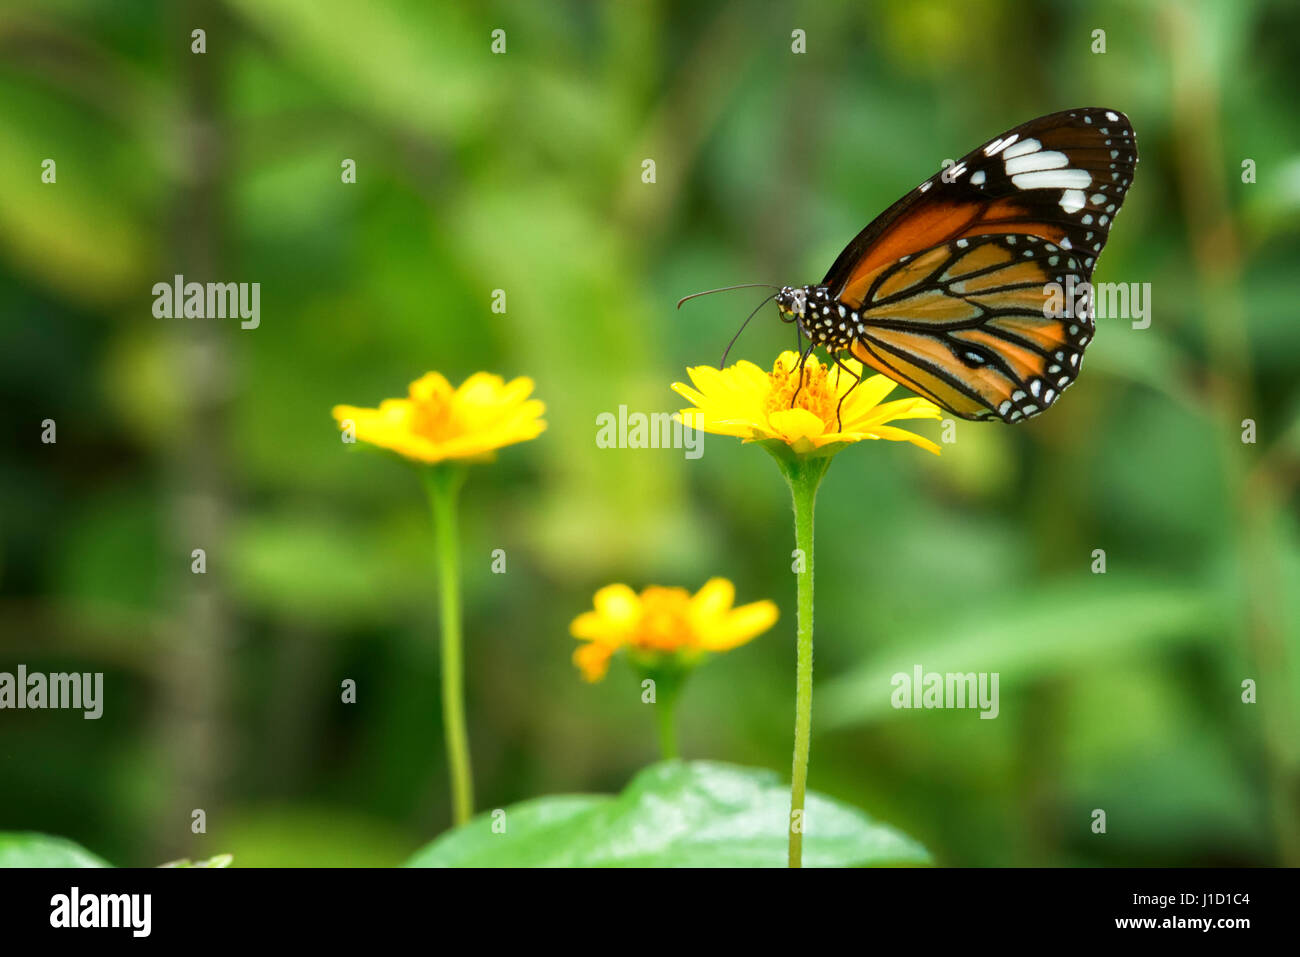 Le tigre rayé (Danaus genutia) assis à une plante jaune. Le papillon porte son nom en raison des chenilles, qui ont des bandes jaunes et noires ressemblant à un tigre. Les couleurs vives avertissent les prédateurs de rester loin des caterpilles toxiques et distststantes. C'est l'un des papillons les plus communs en Inde. Banque D'Images